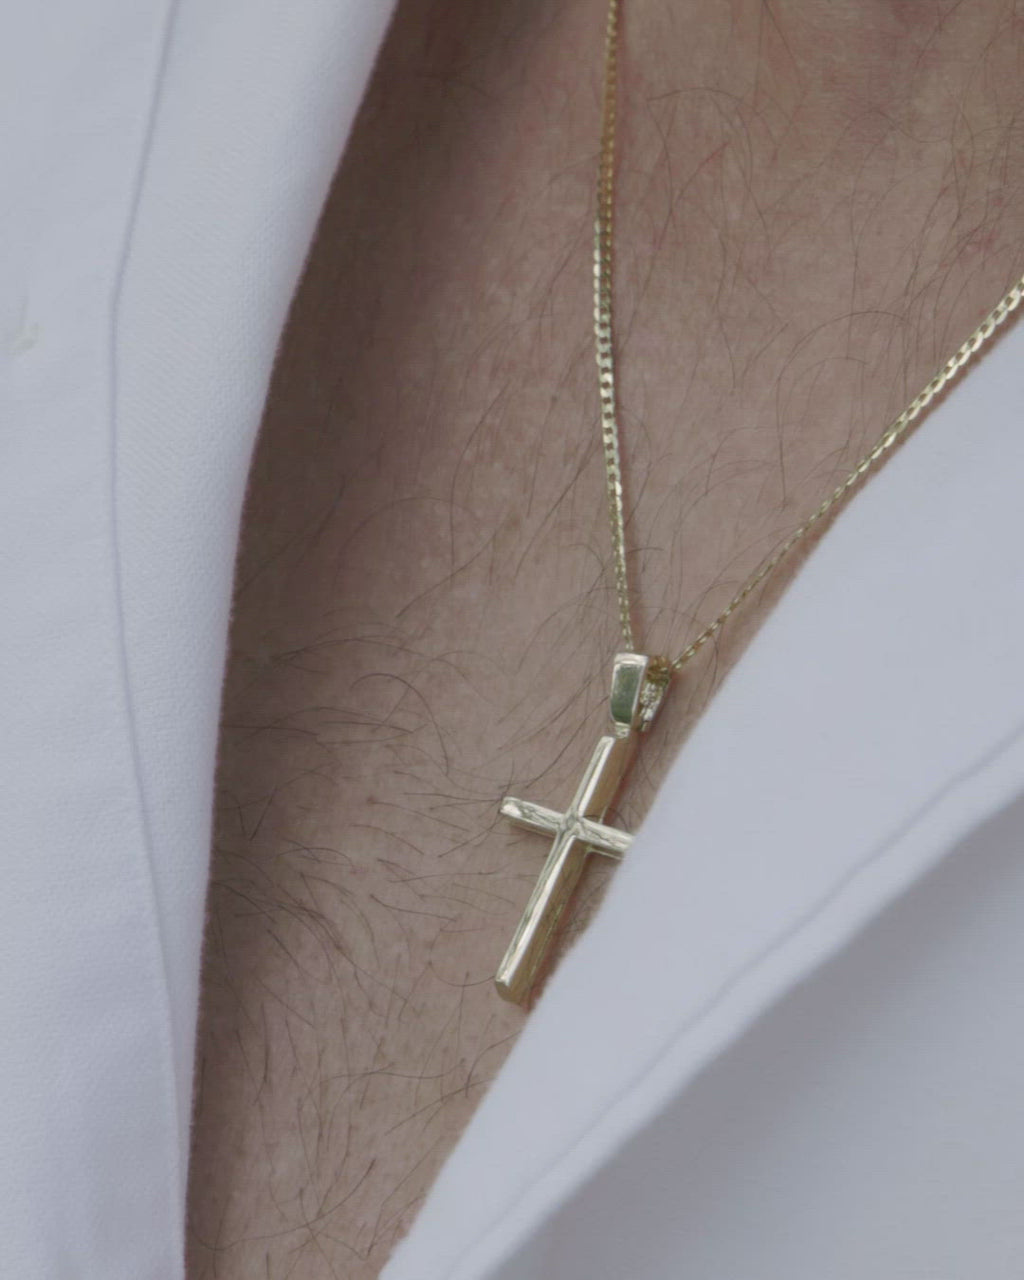 Χρυσός σταυρός βάπτισης Κ14 για αγόρι, διπλής όψης λουστράτος, φορεμένος σε μοντέλο.